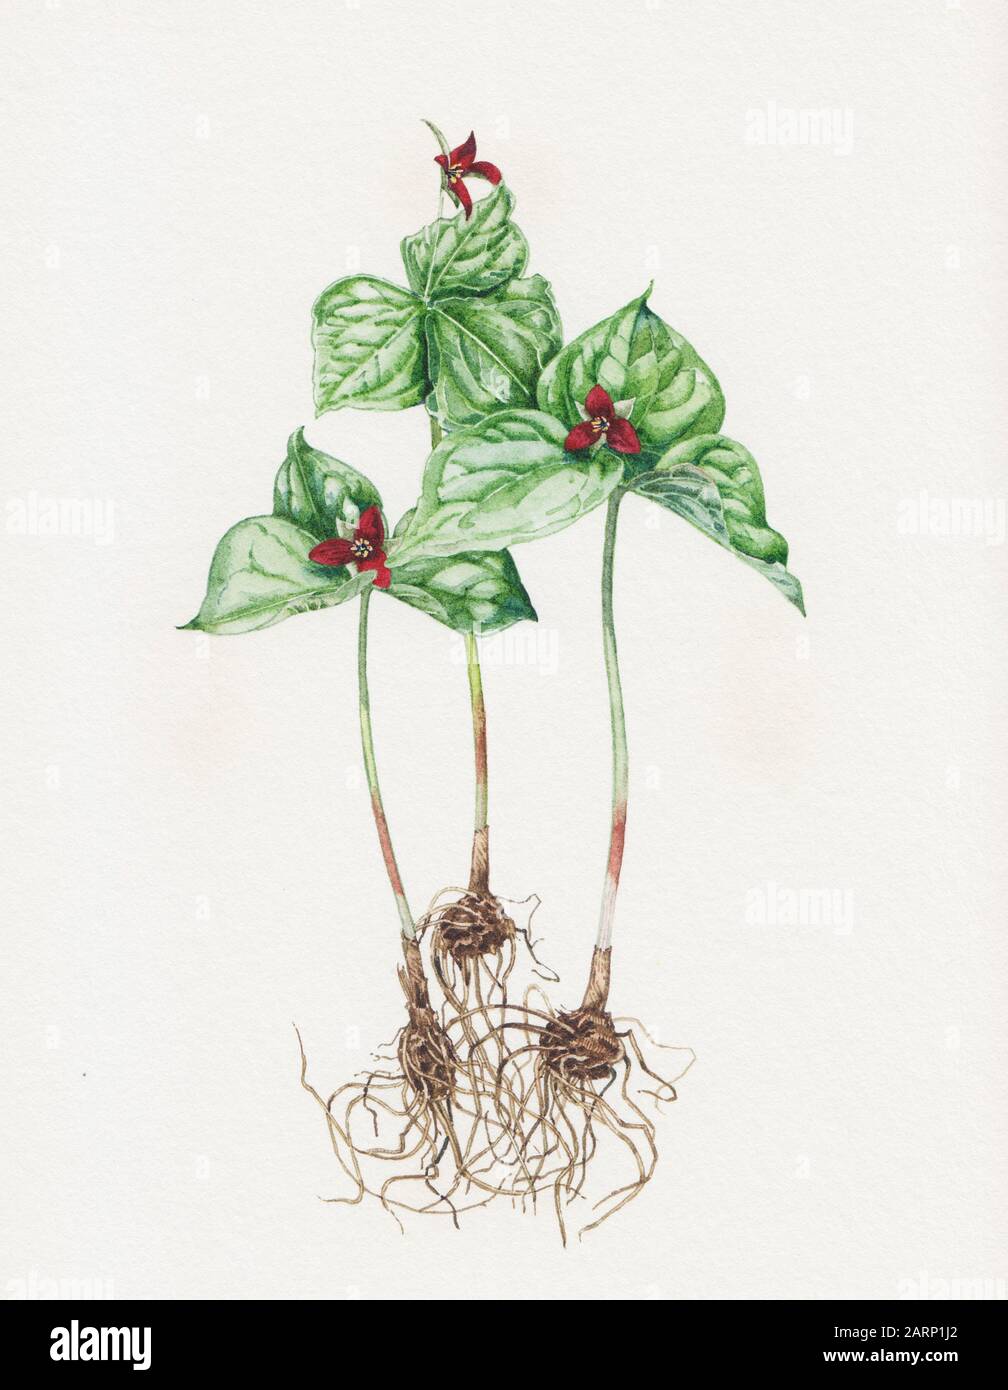 Illustration of Trillium Erectum plant Stock Photo